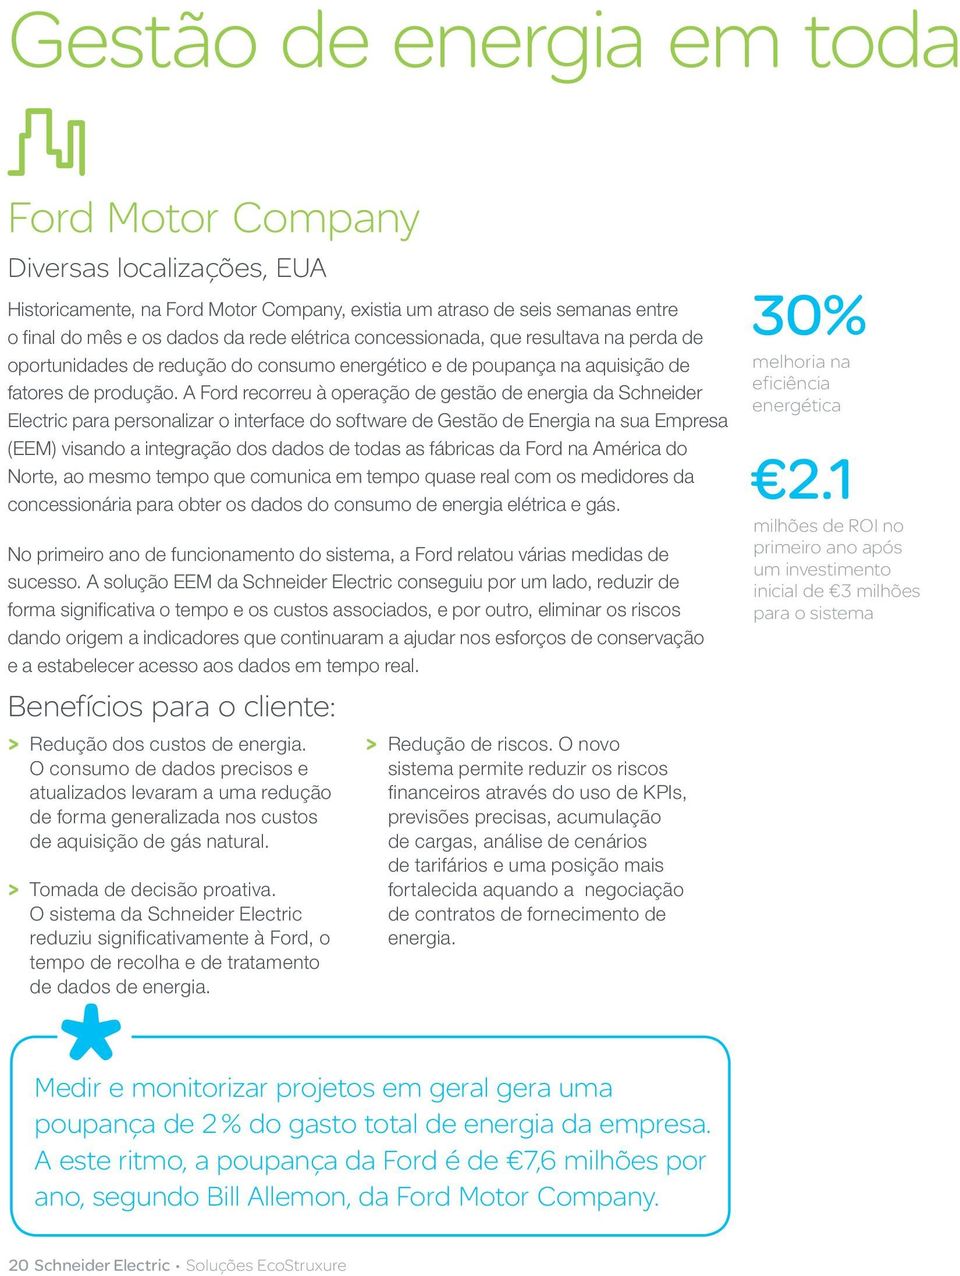 A Ford recorreu à operação de gestão de energia da Schneider Electric para personalizar o interface do software de Energia na sua Empresa (EEM) visando a integração dos dados de todas as fábricas da